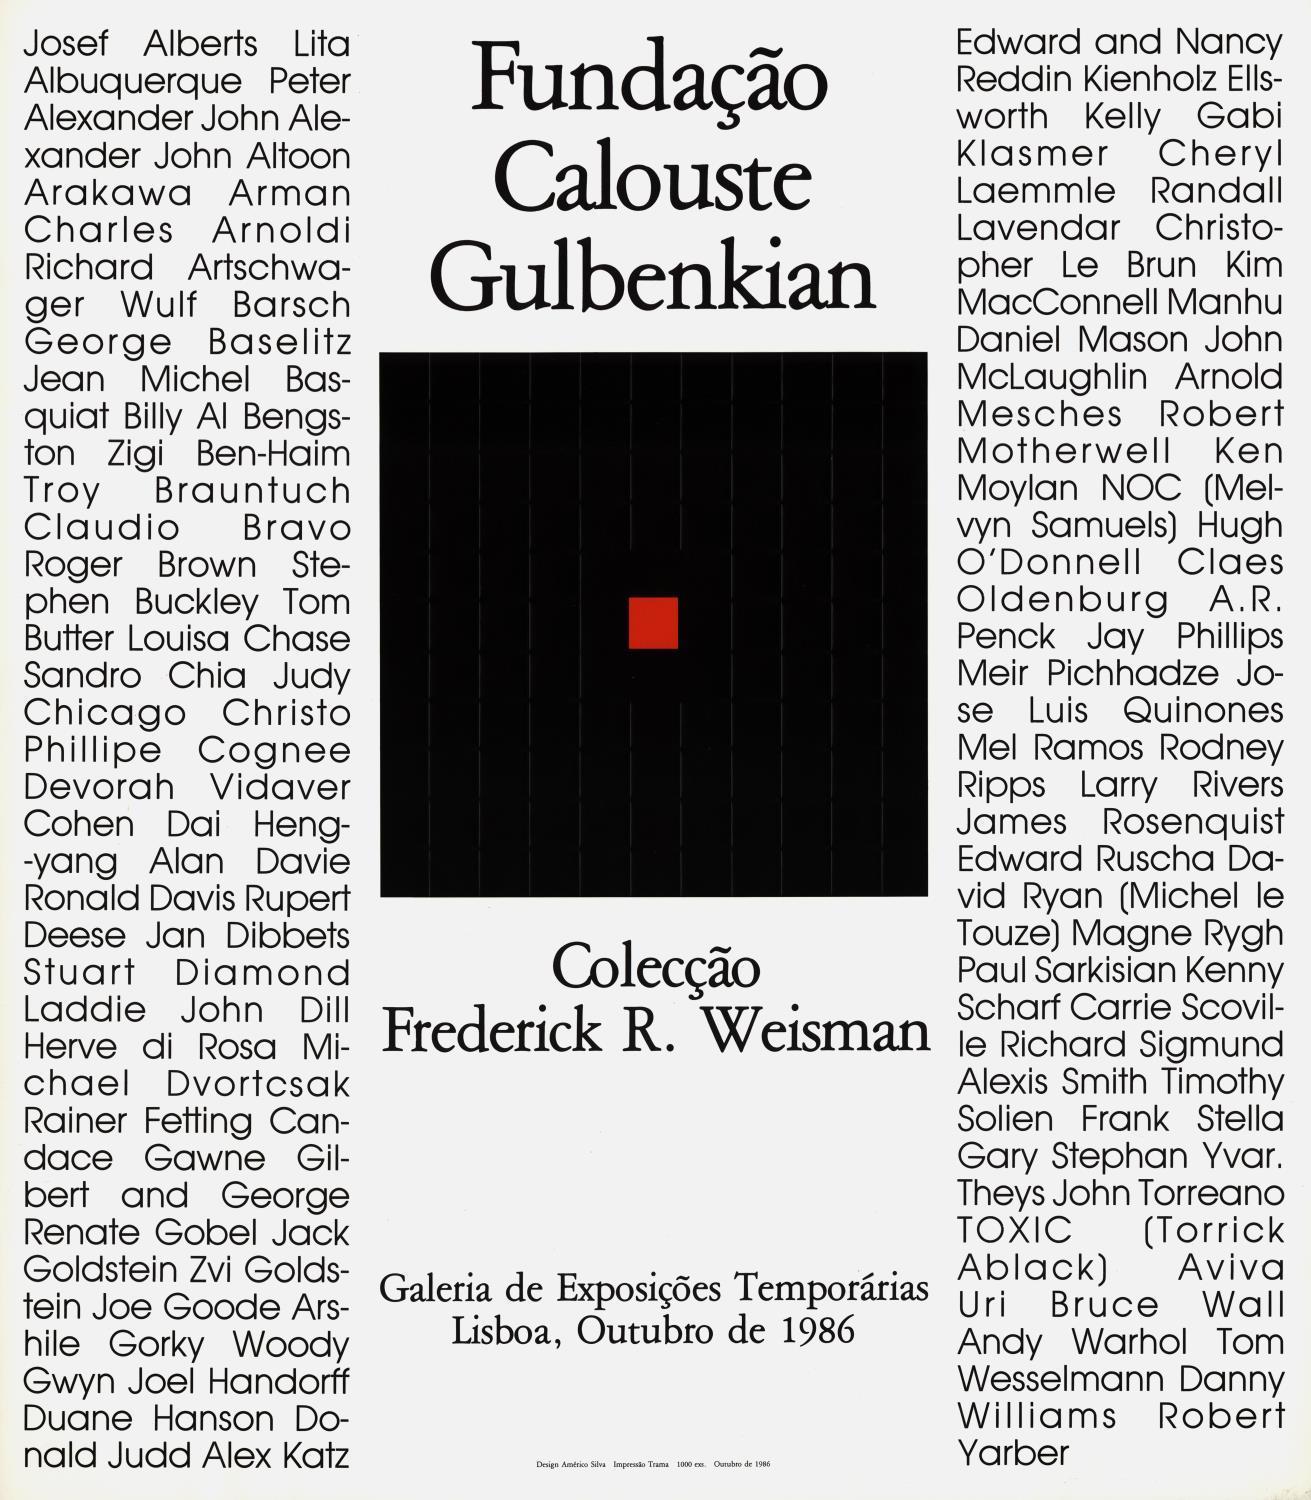 Colecção Frederick R. Weisman